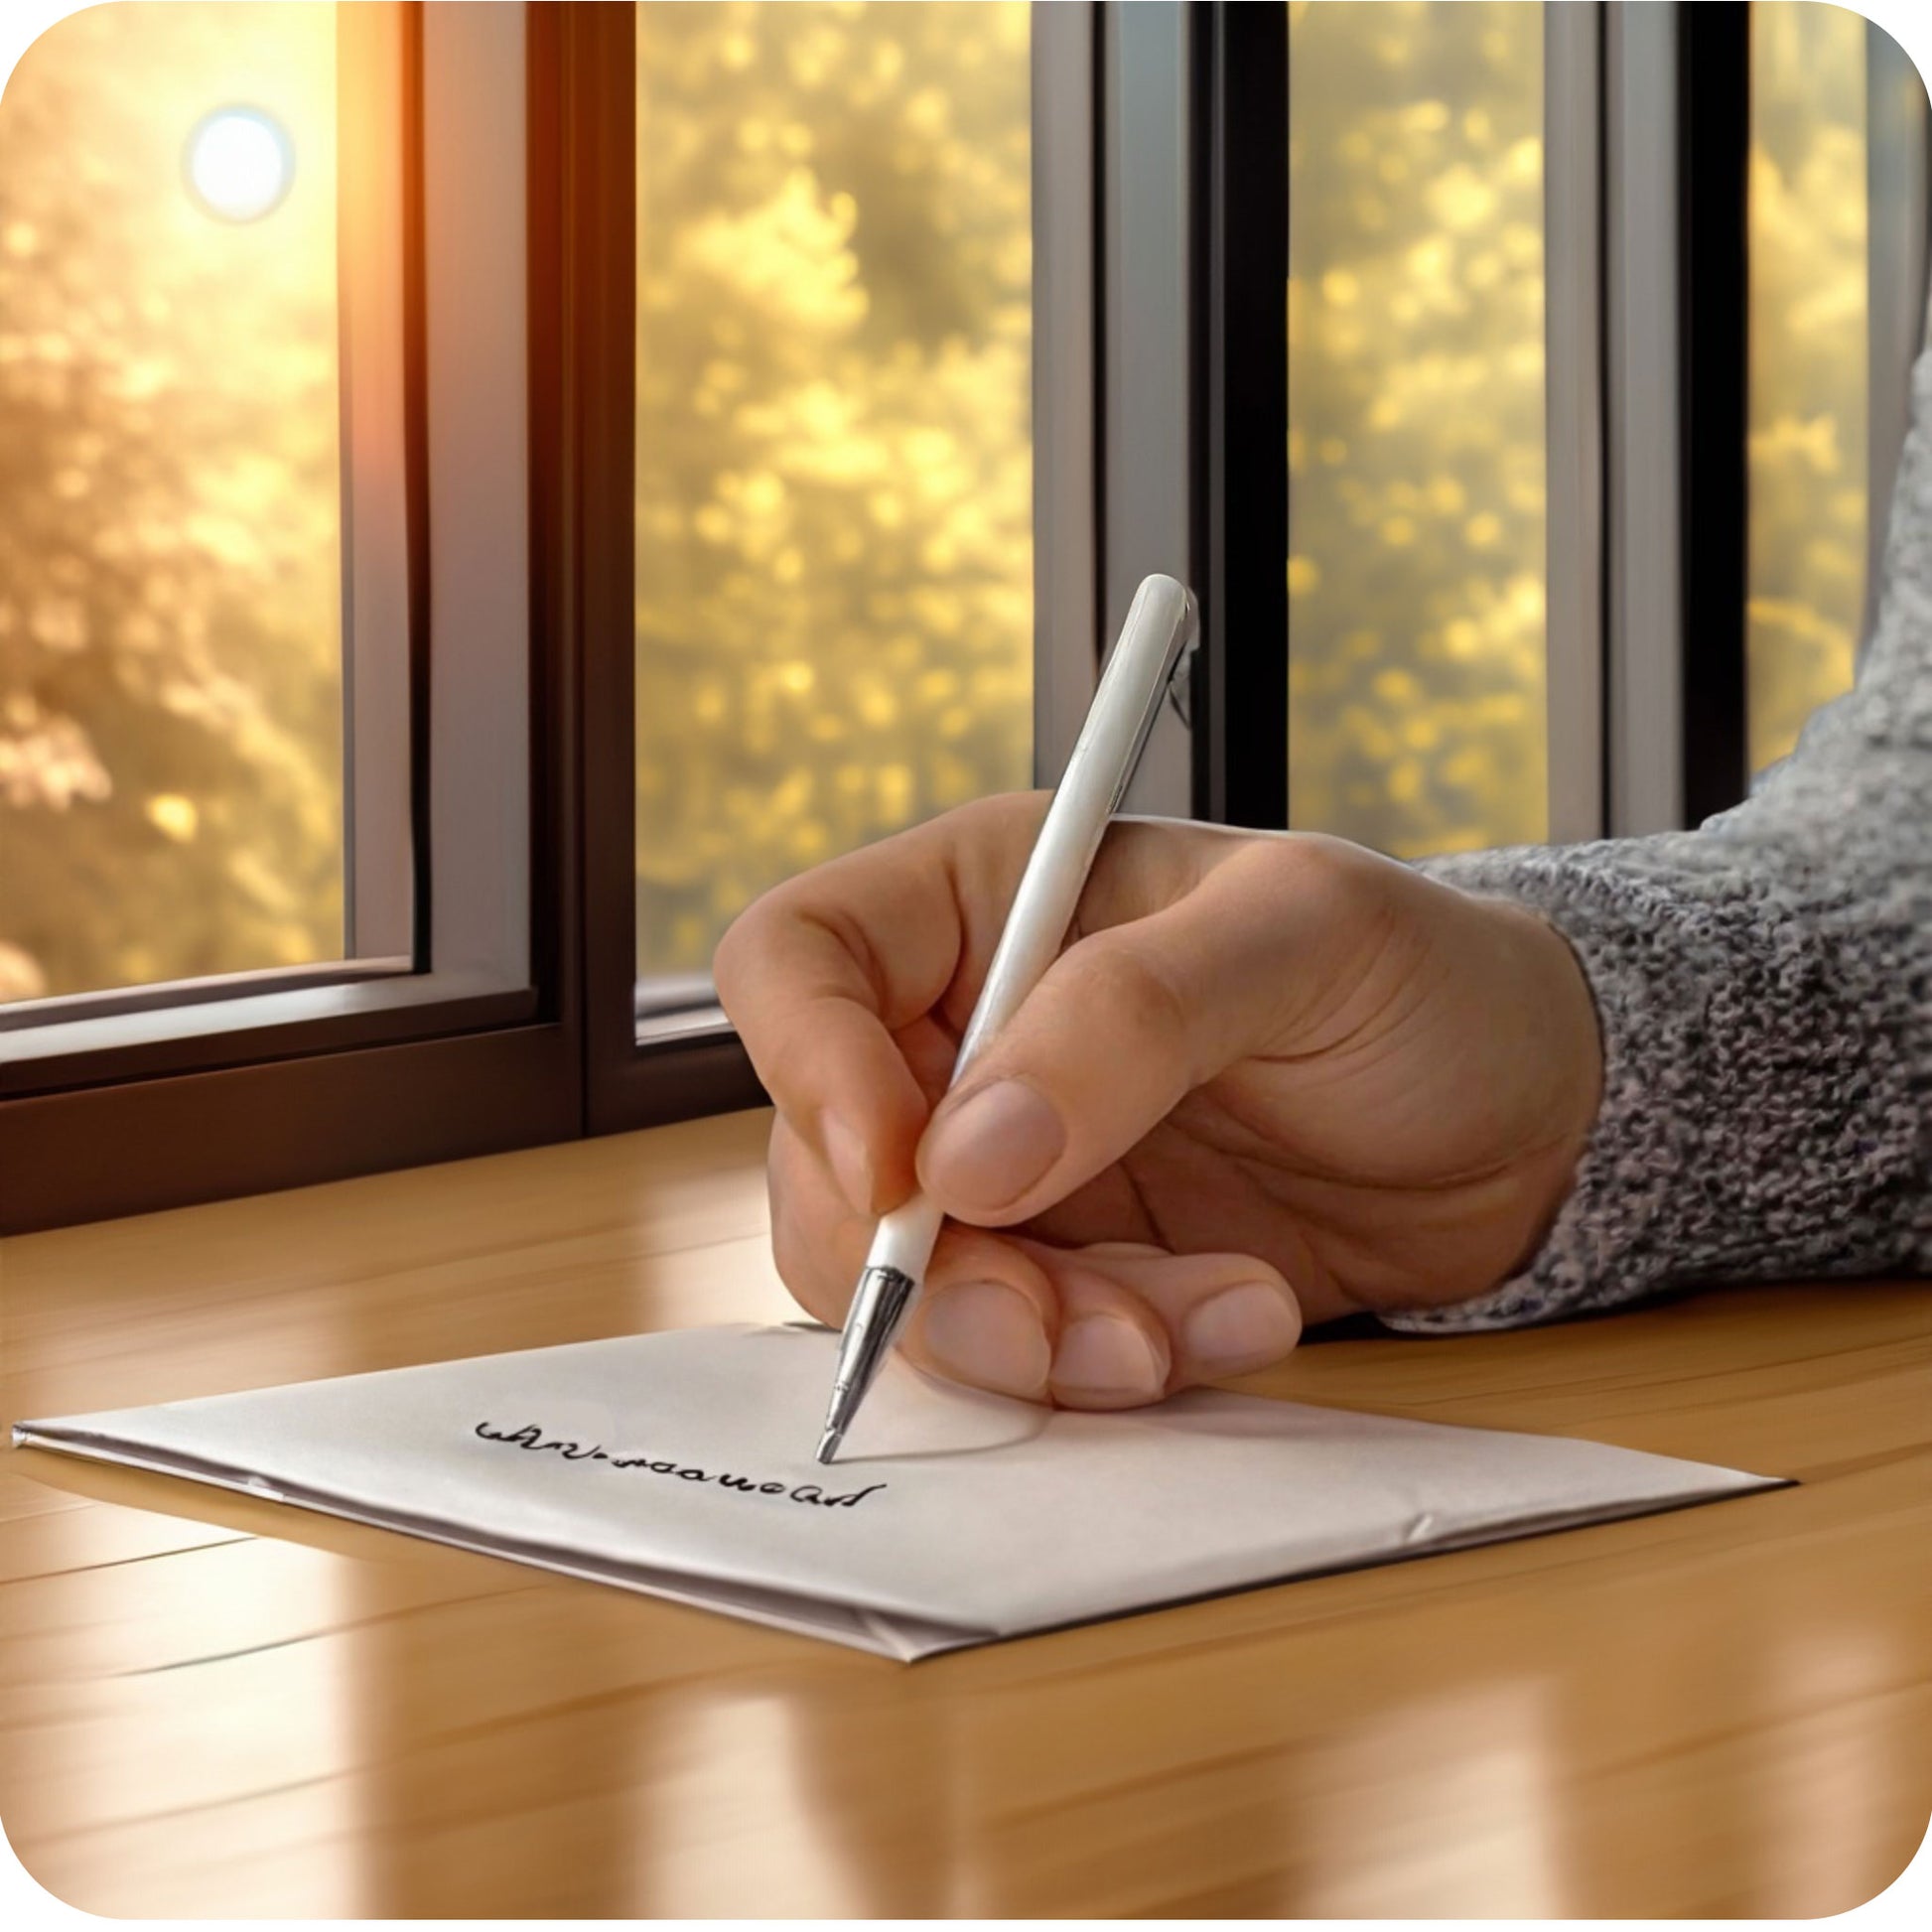 Een sfeerfoto waarin iemand een wenskaart aan het schrijven is aan een tafel, in een aangepaste, specifieke sfeervolle omgeving